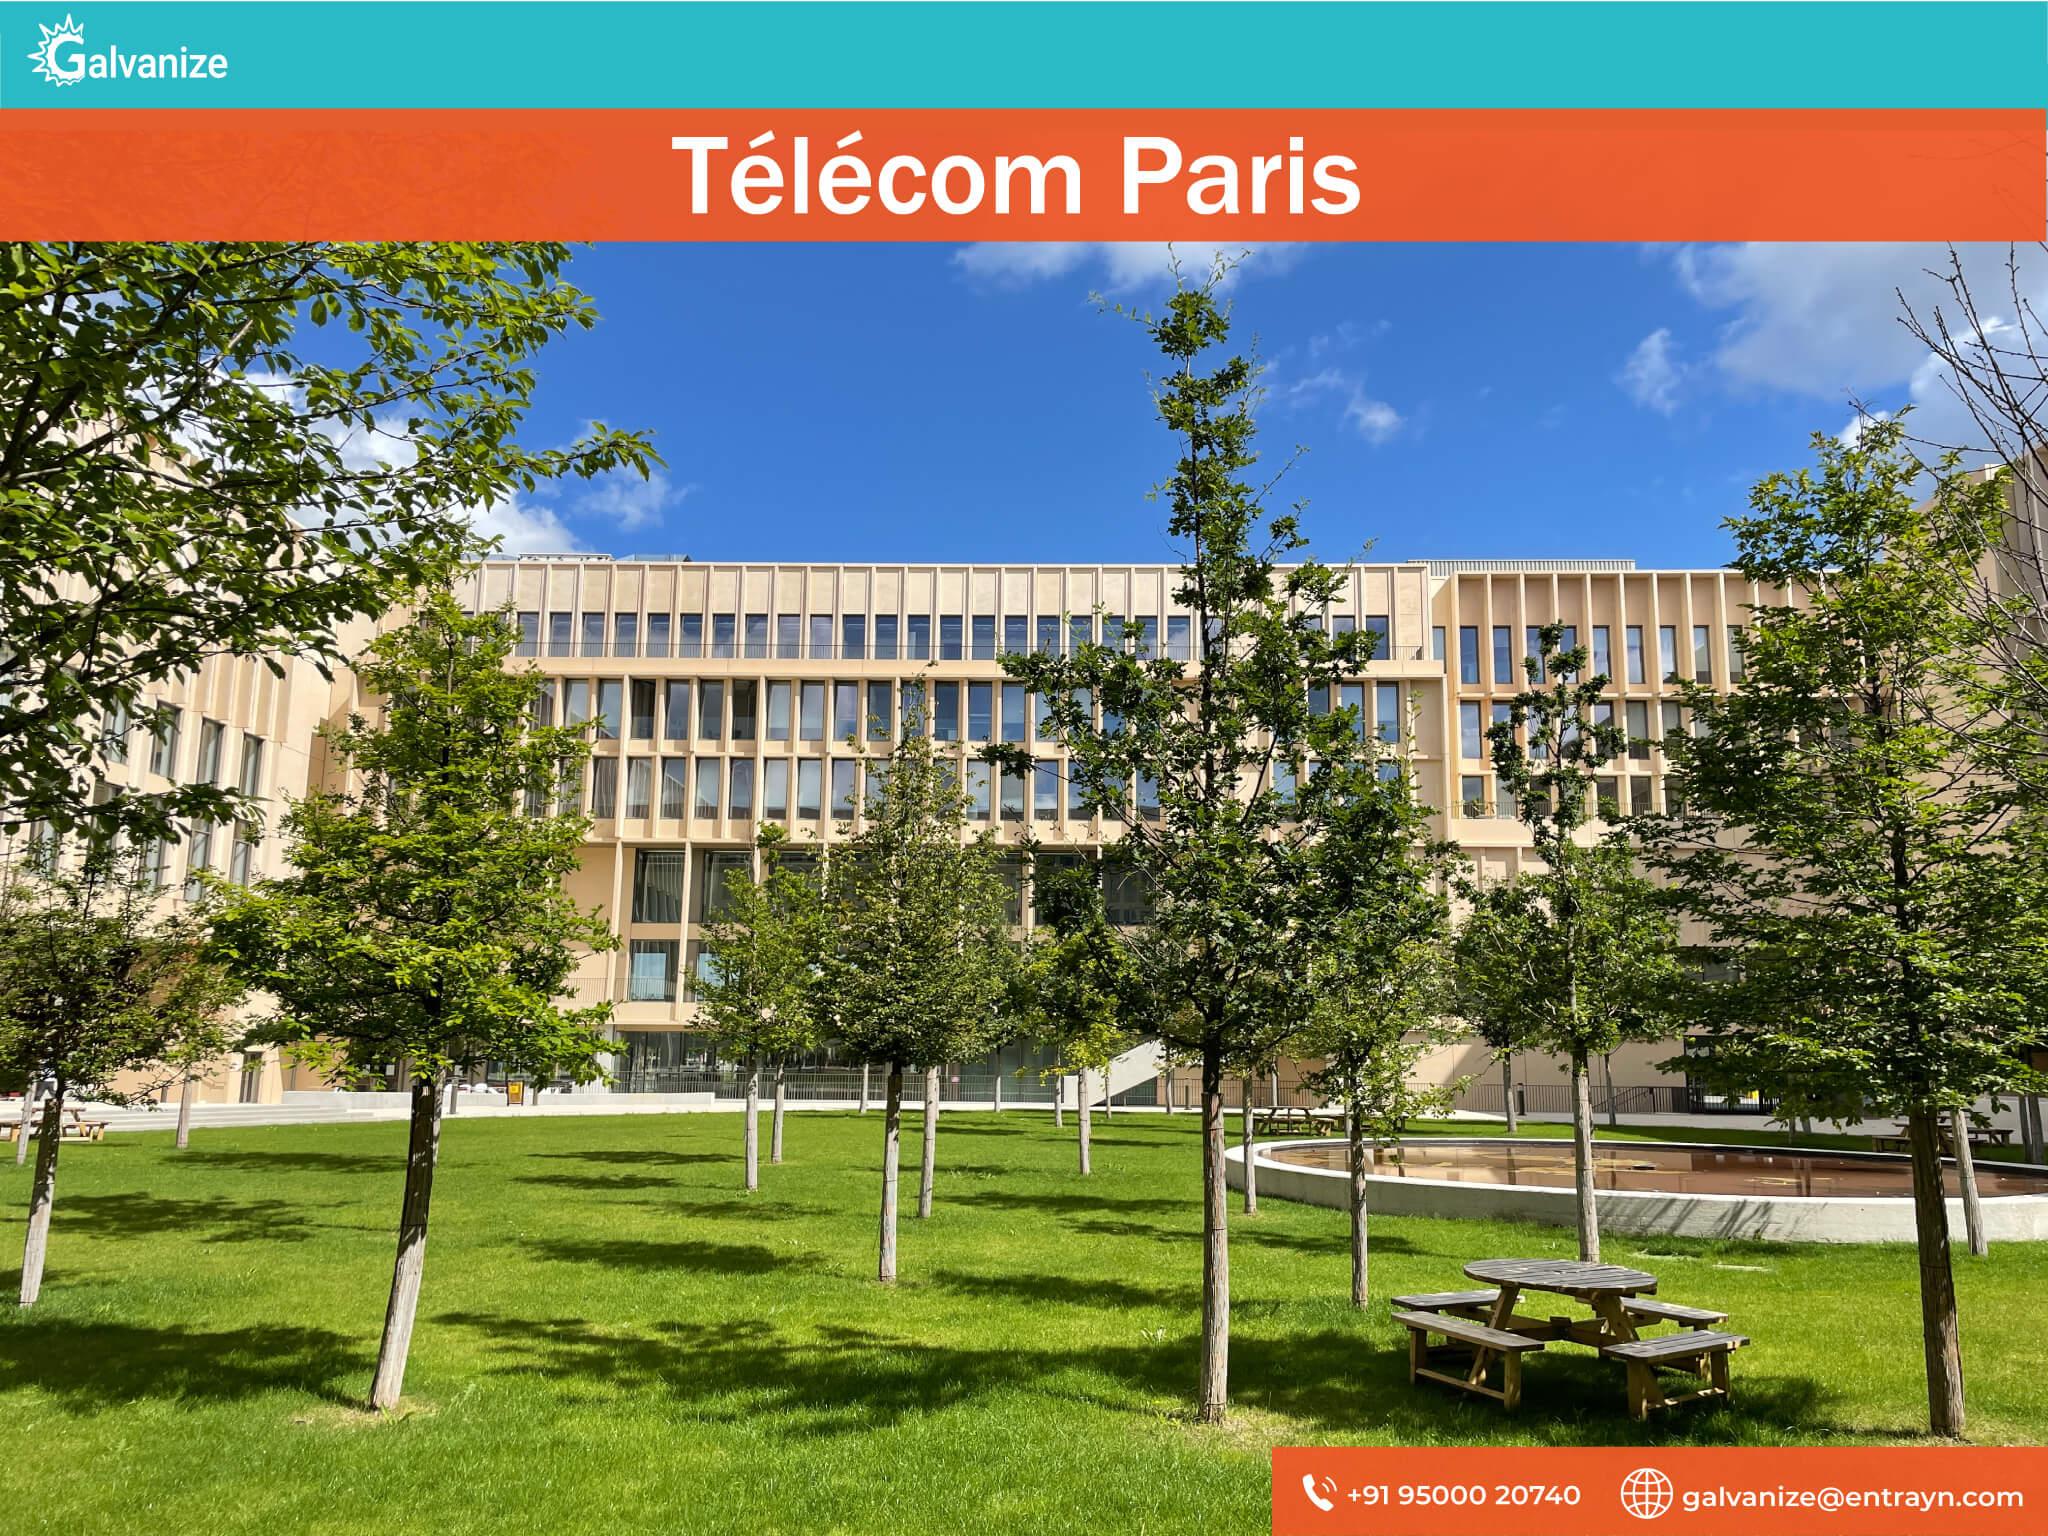 Télécom Paris | Top Universities in France